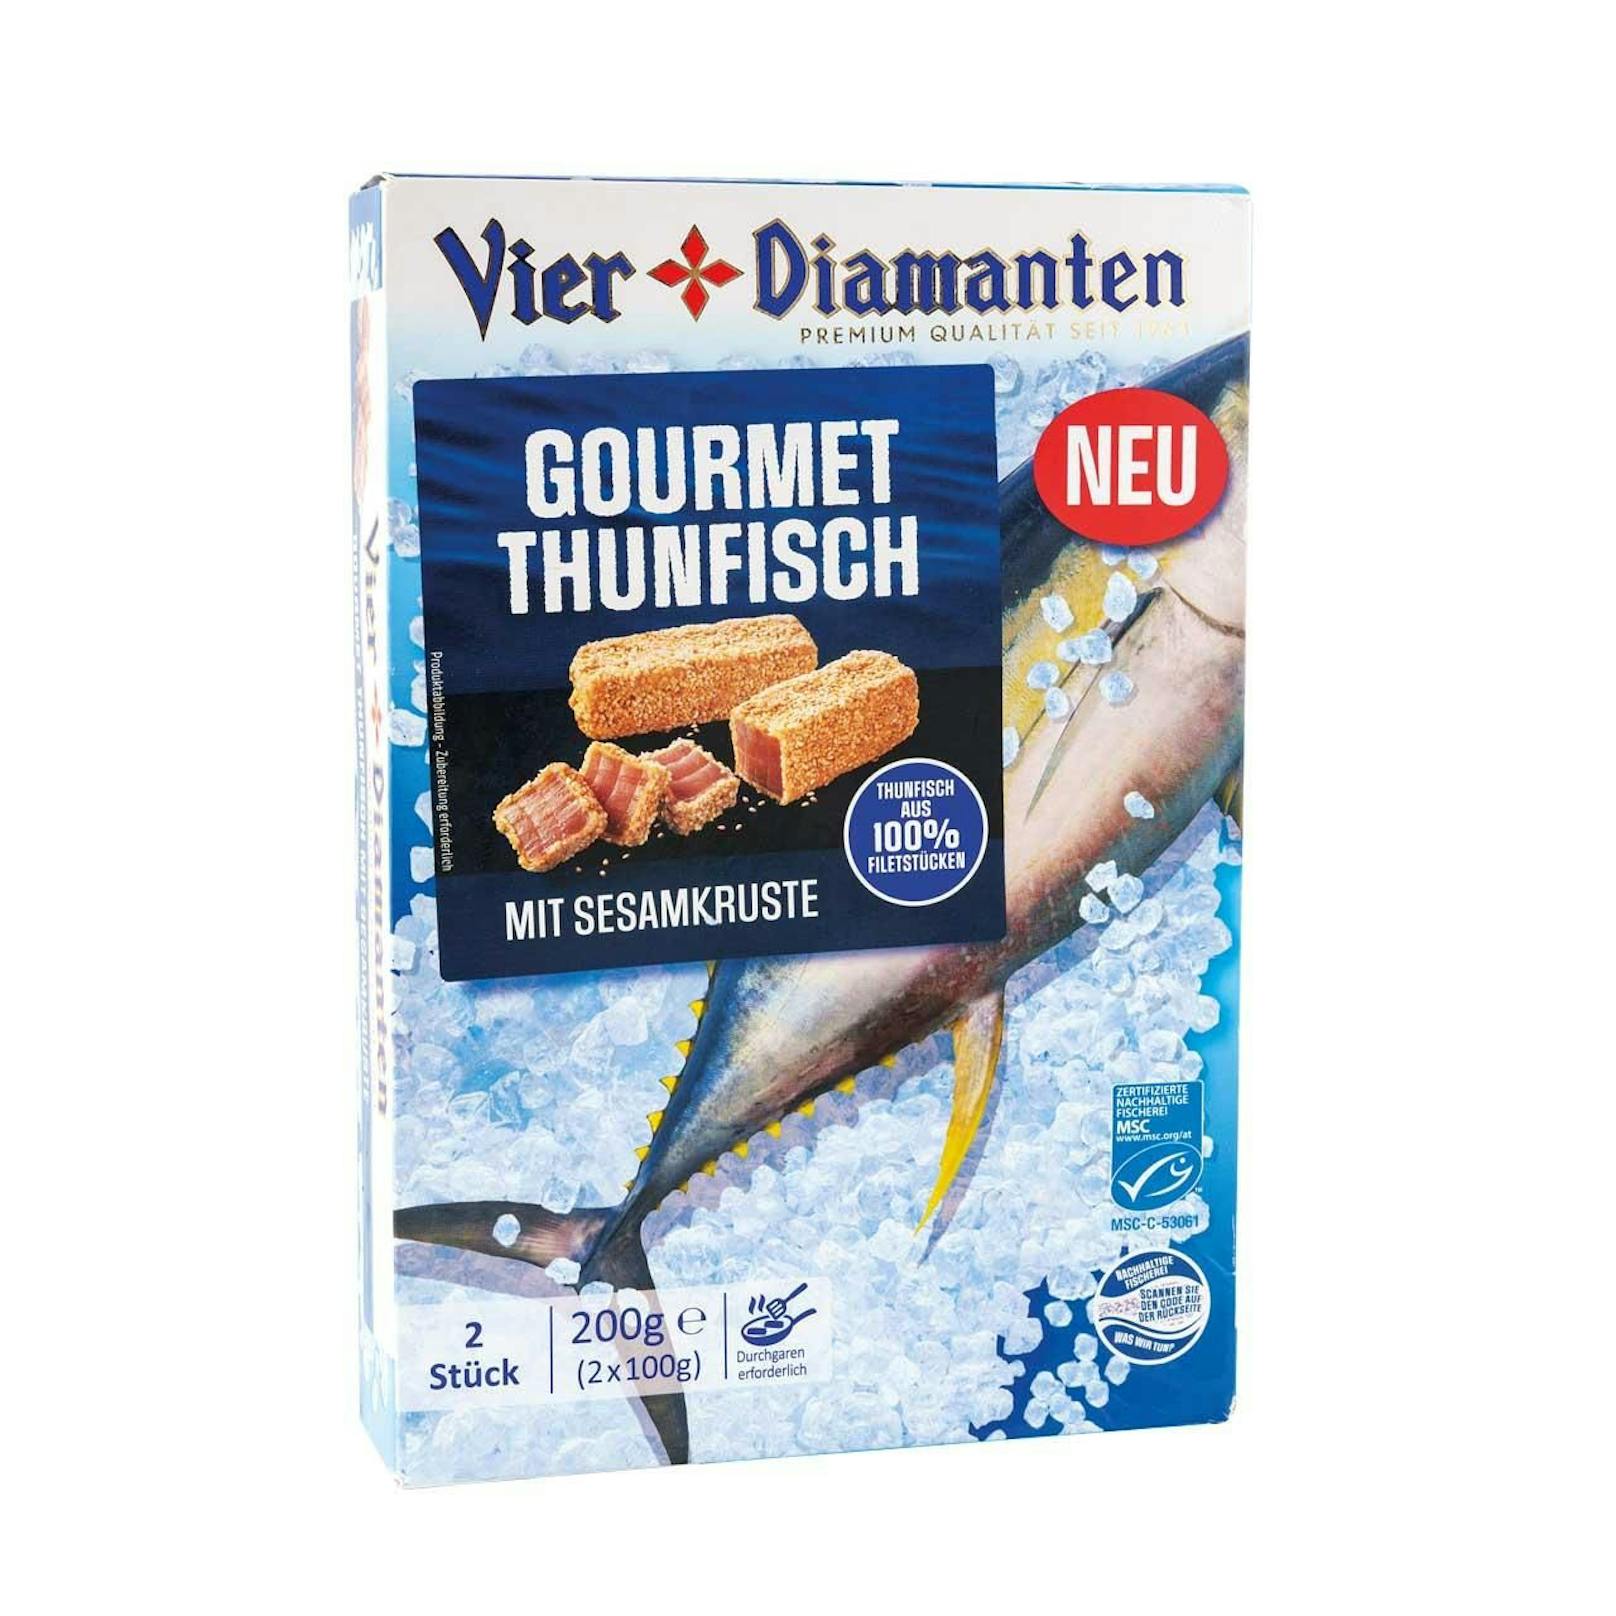 In dieser Schachtel "Gourmet Thunfisch Vier Diamanten" finden sich ...